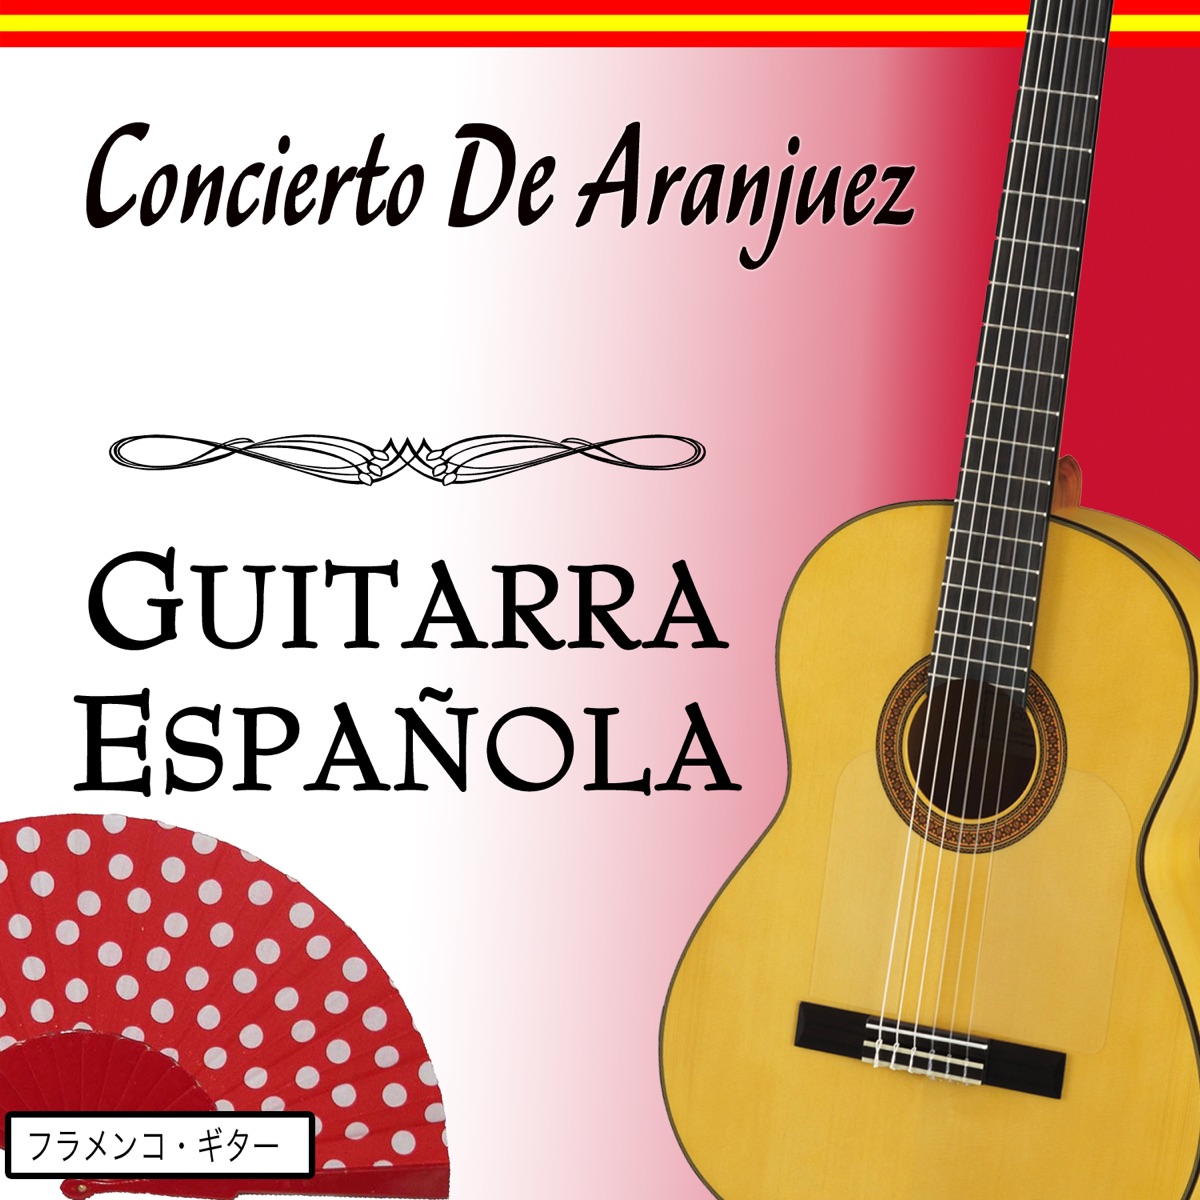 Concierto De Aranjuez Con Guitarra Española - EP by Salvador Andrades on  Apple Music